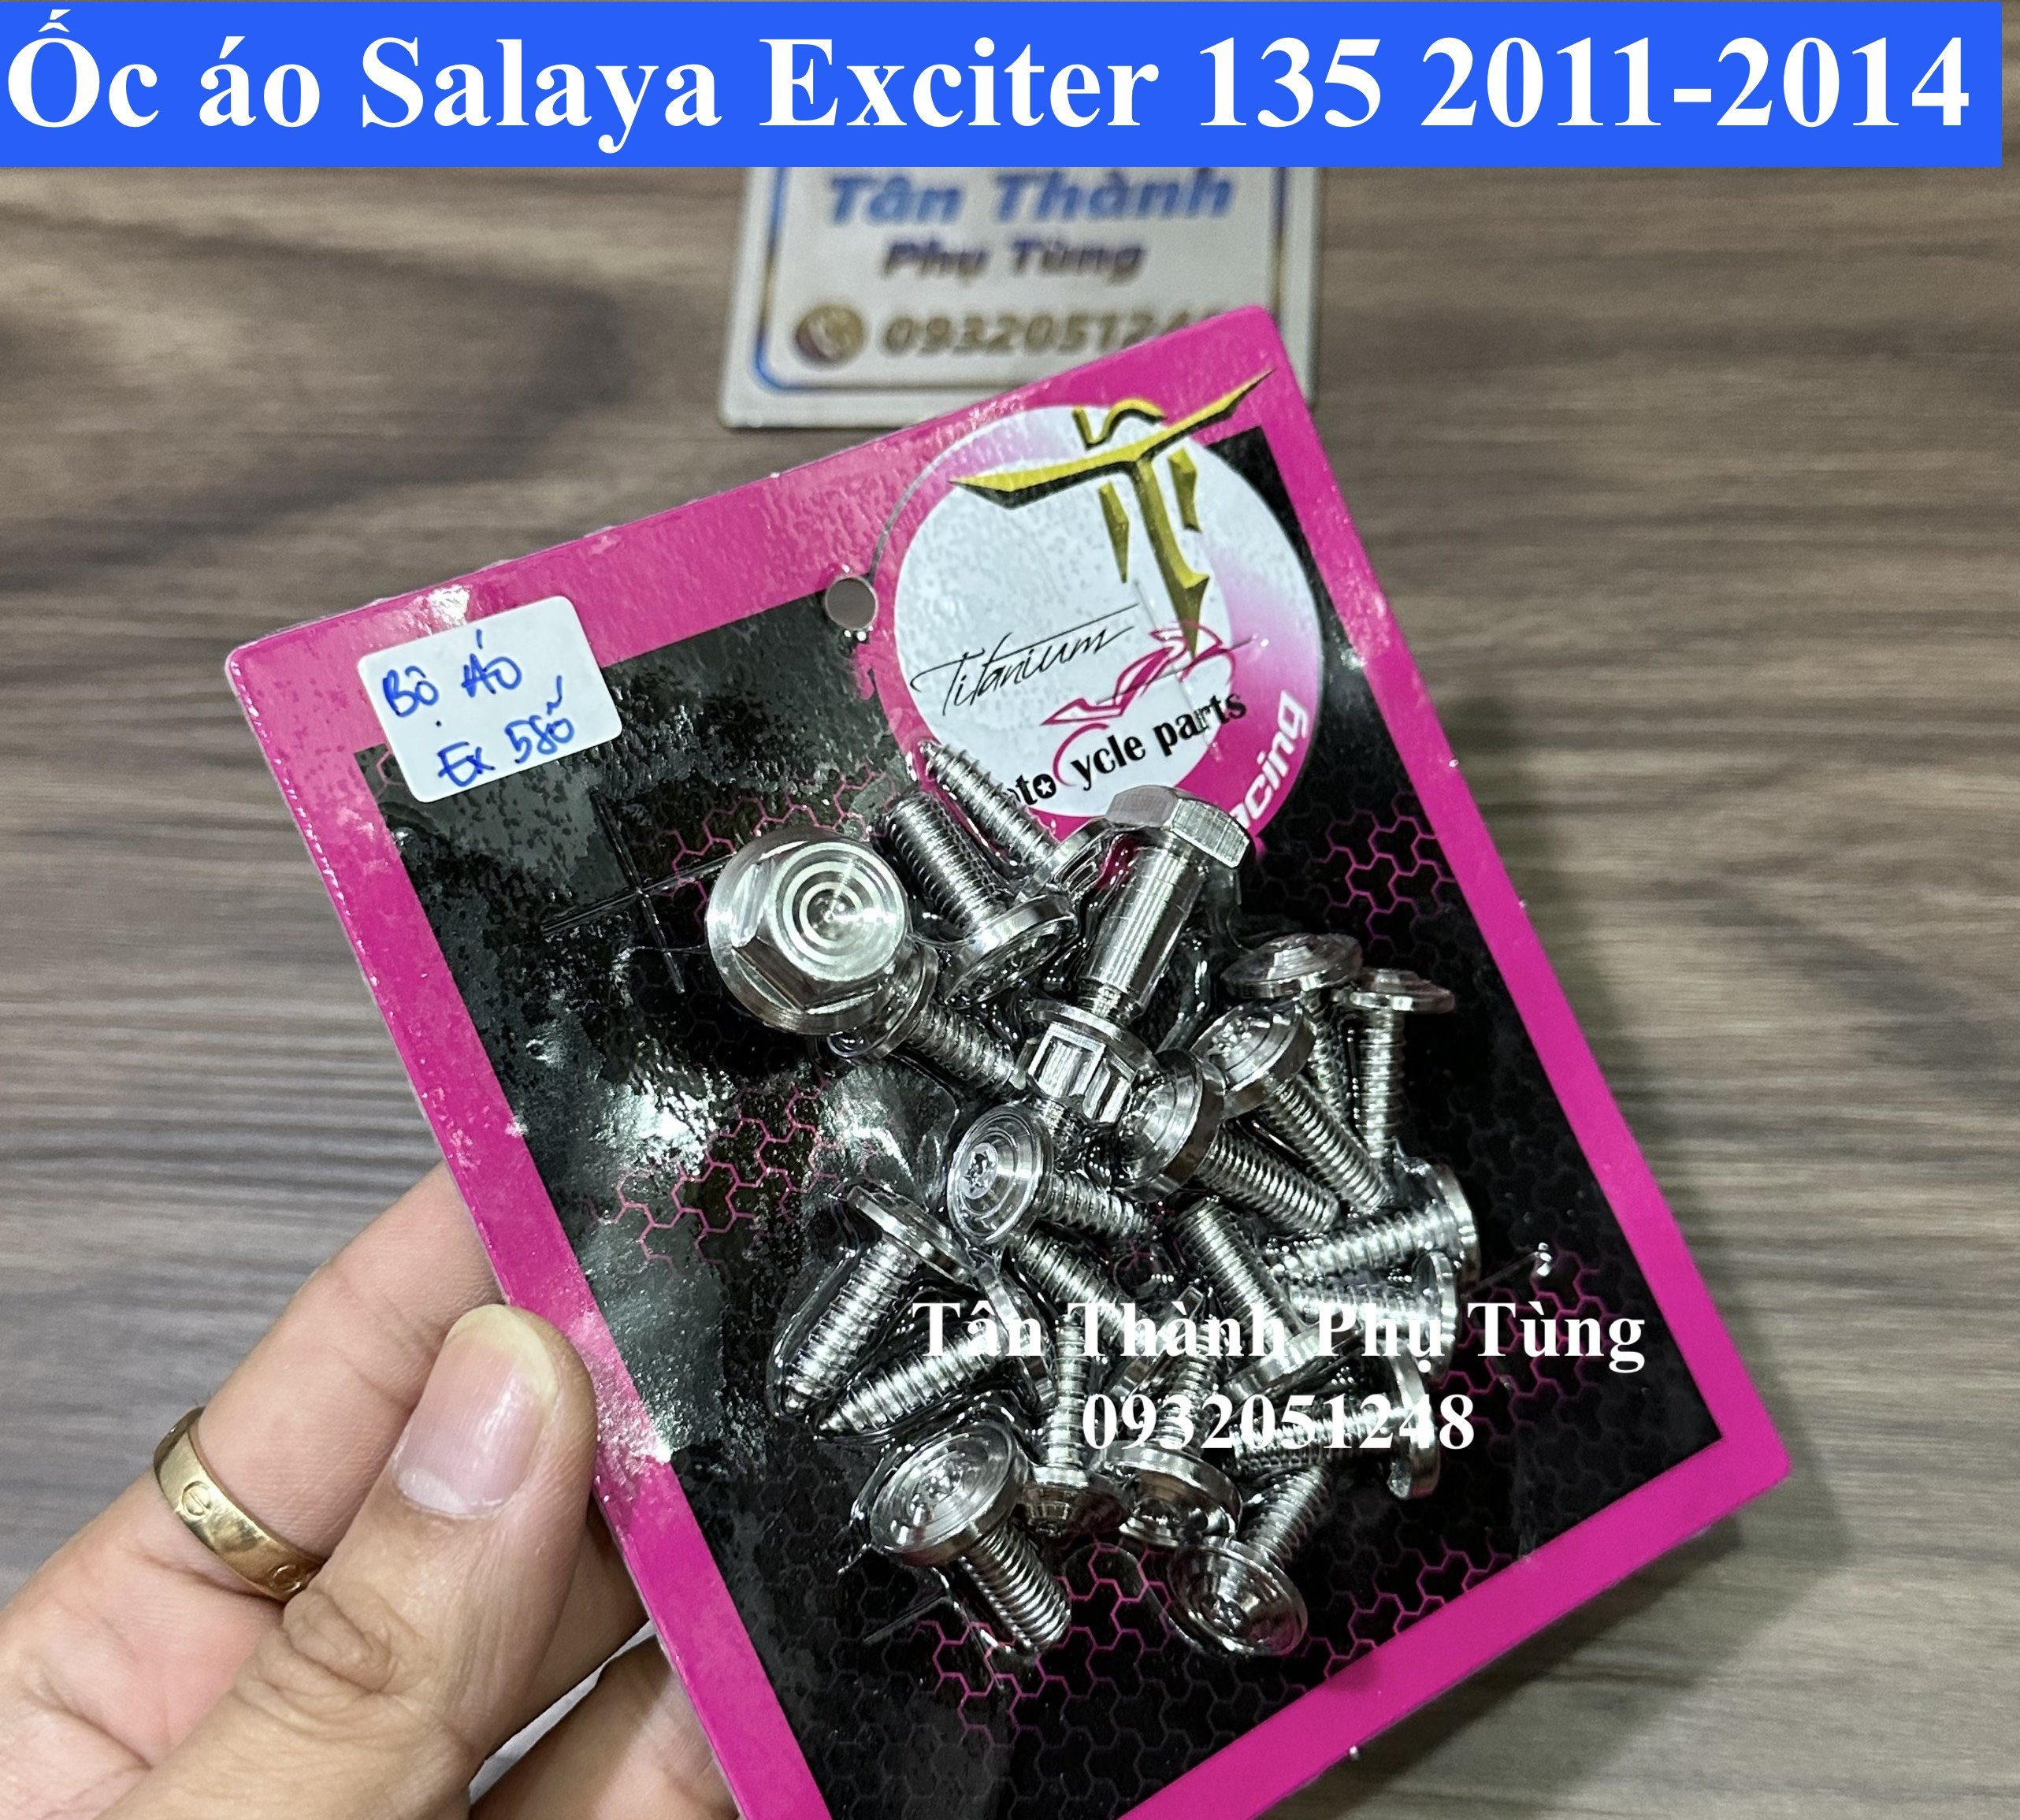 Bộ ốc áo Salaya dành cho Exciter 135 2011-2014 mẫu đầu Thái